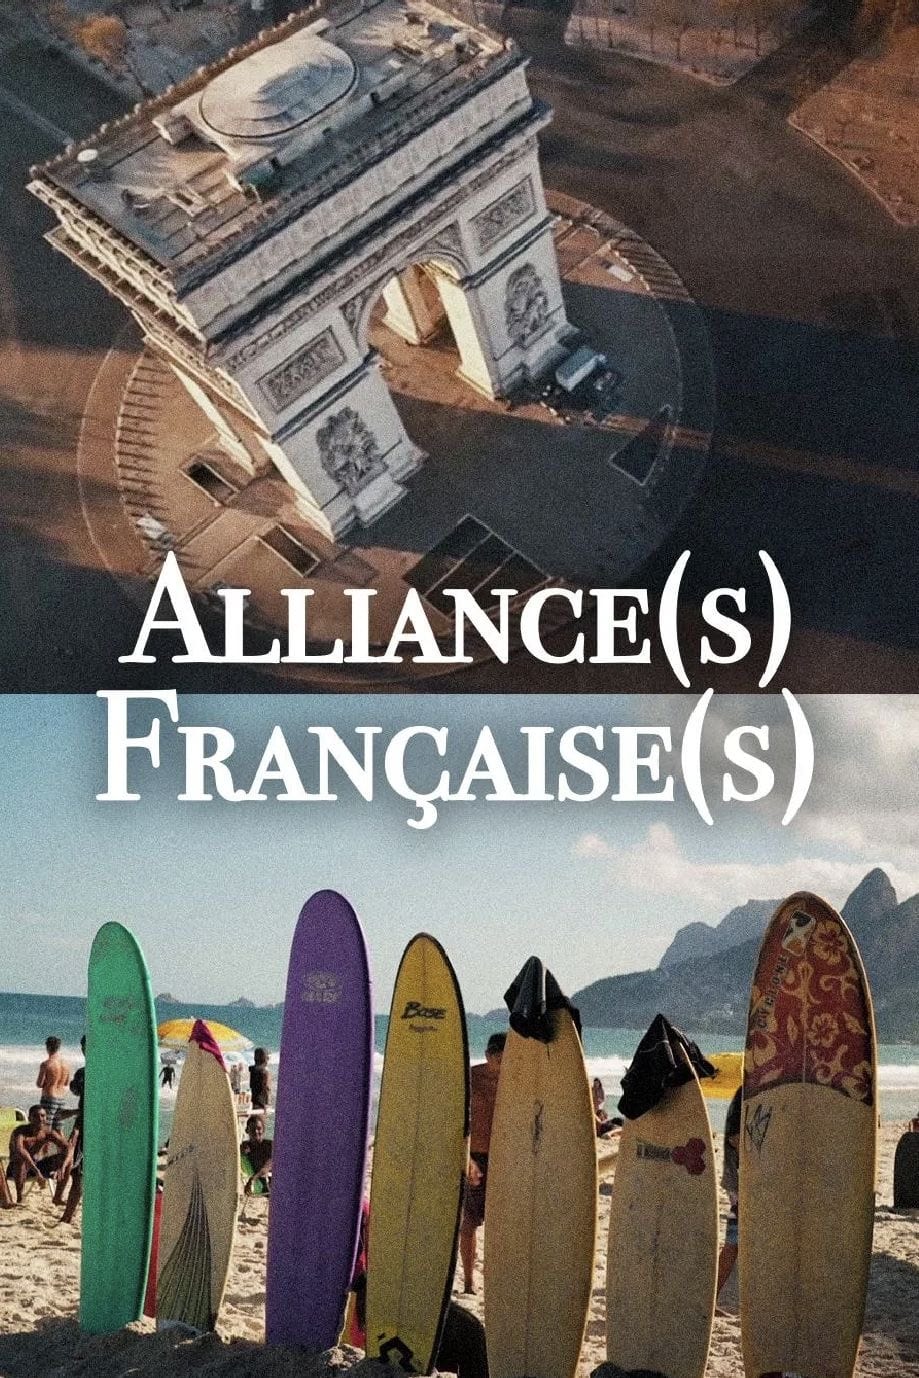 Alliance(s) Française(s)